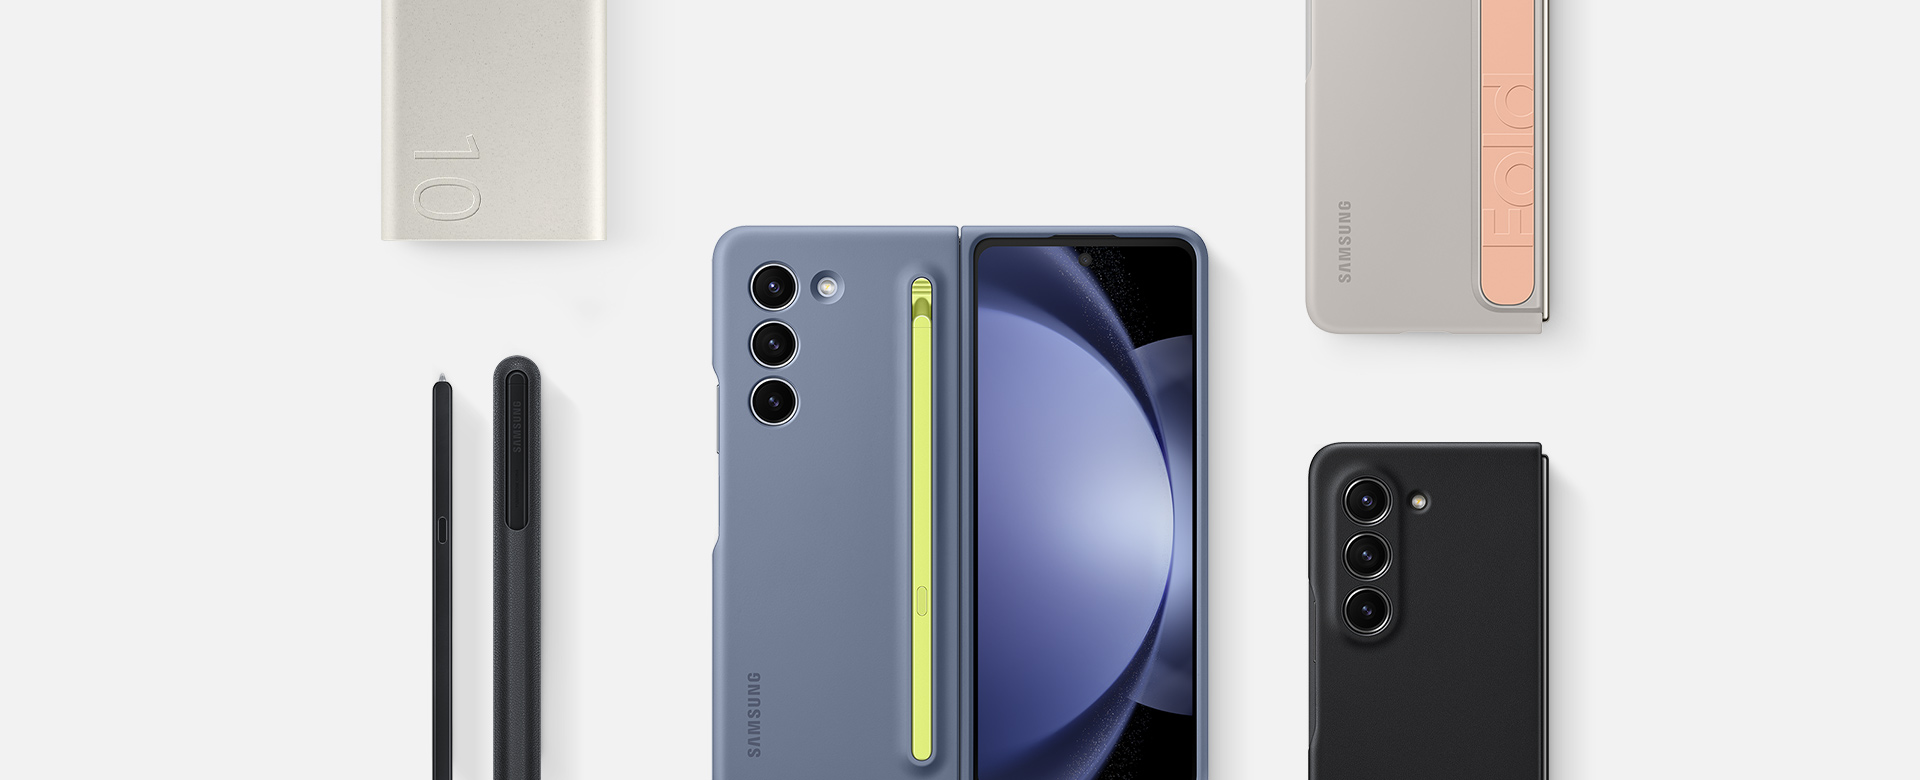 Prikaz dodatne opreme za Galaxy Z Fold5: Baterijski sklop, S Pen Fold Edition pisalo za Galaxy Z Fold5 telefon in tri naprave z nameščenimi ovitki, med drugim s tankim ovitkom z S Pen pisalom ledeno modre barve, stoječim ovitkom s paščkom peščene barve in ovitkom iz eko usnja črne barve.